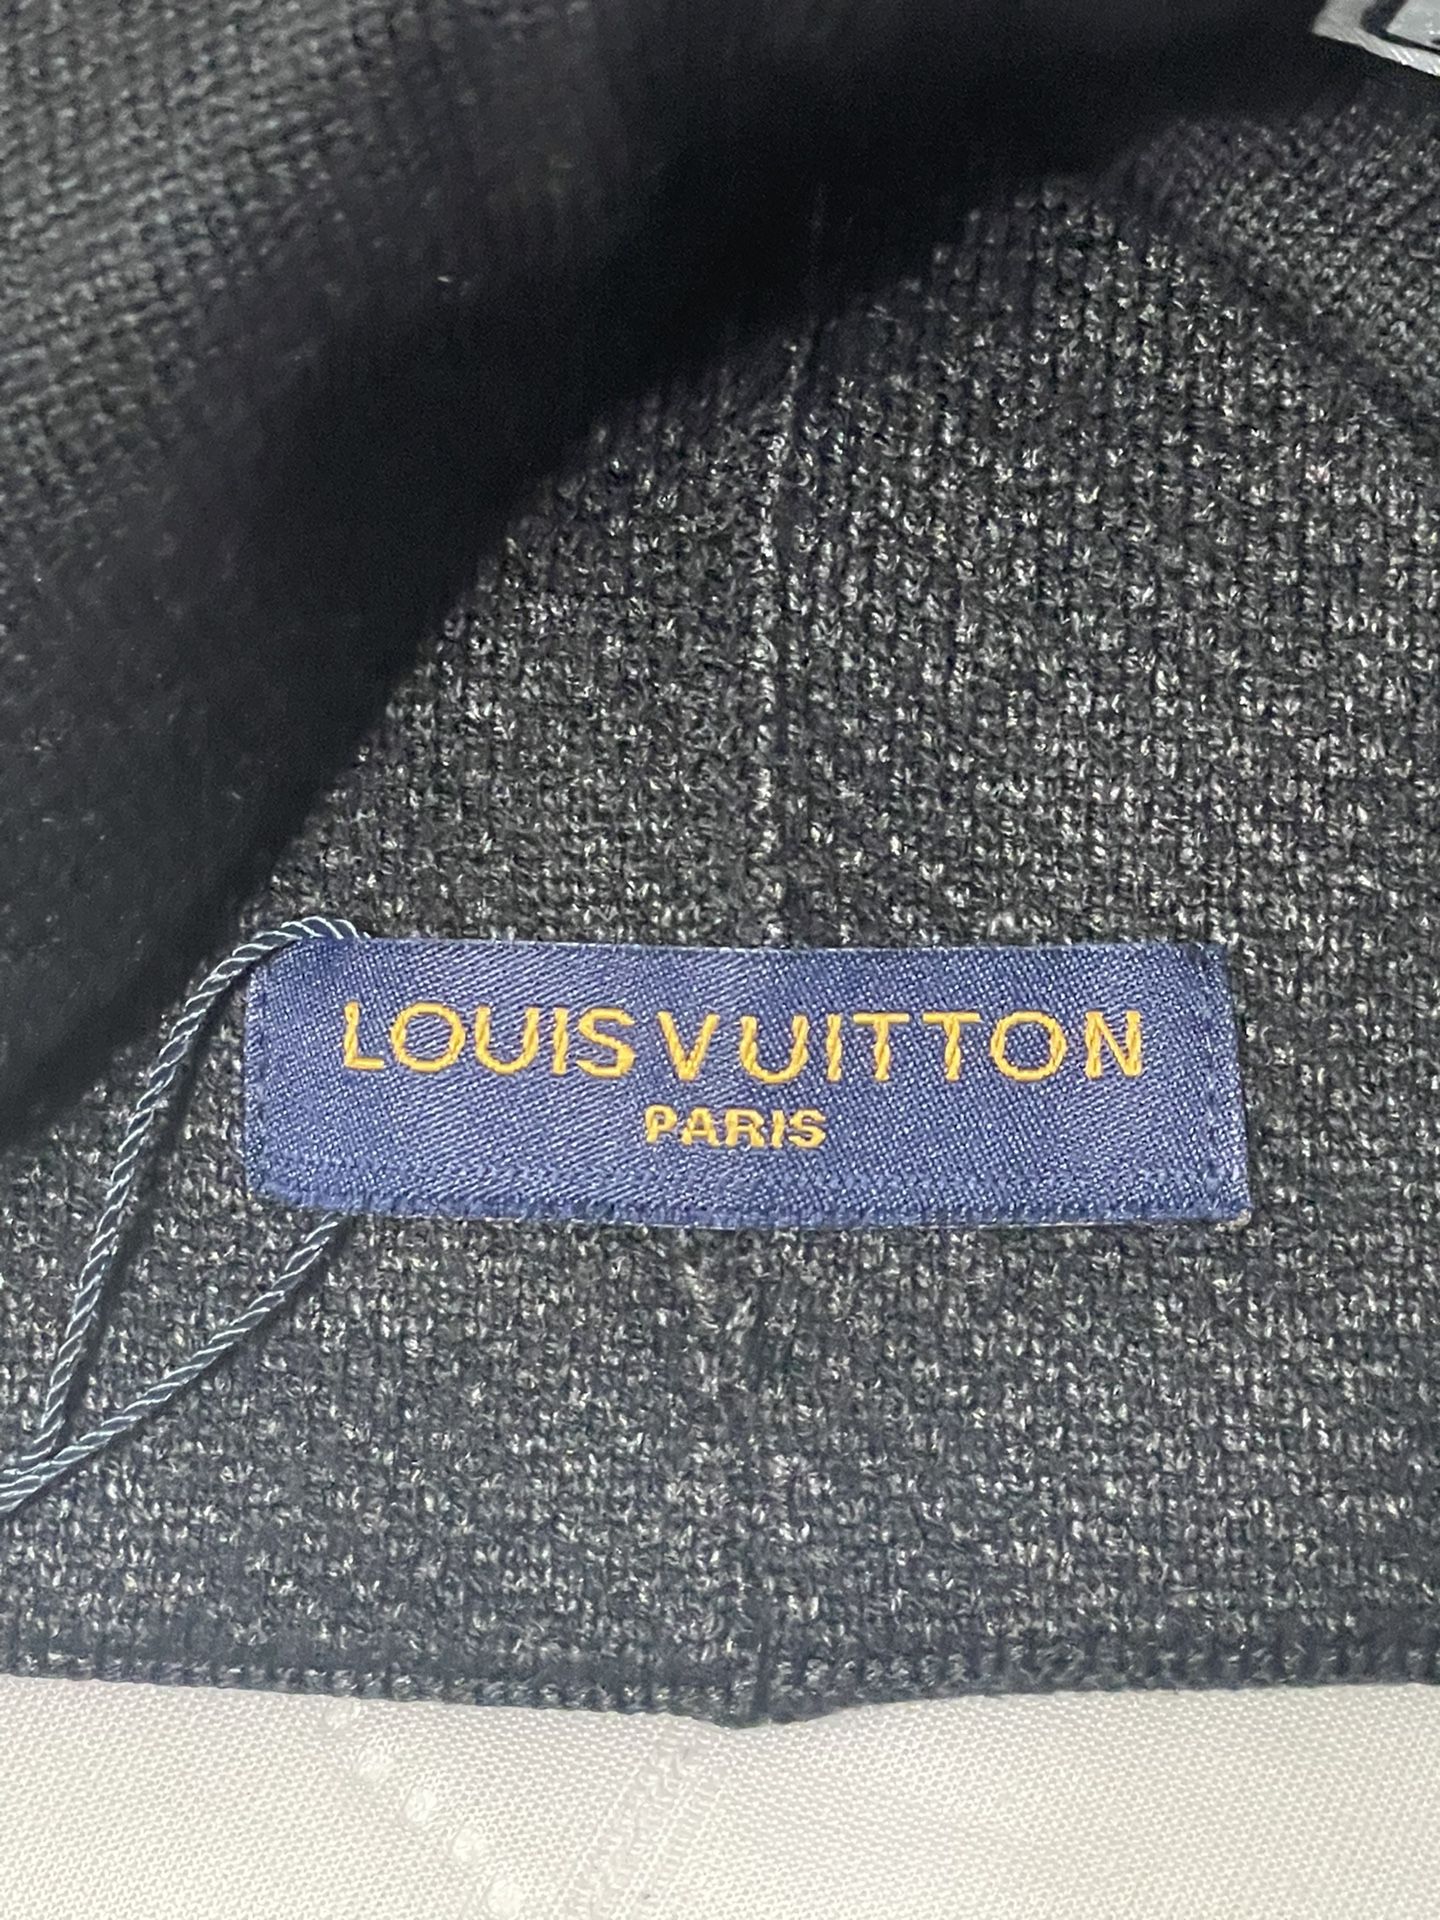 Louis Vuitton Dark Grey Neo Petit Damier Beanie for Sale in Dallas, TX -  OfferUp